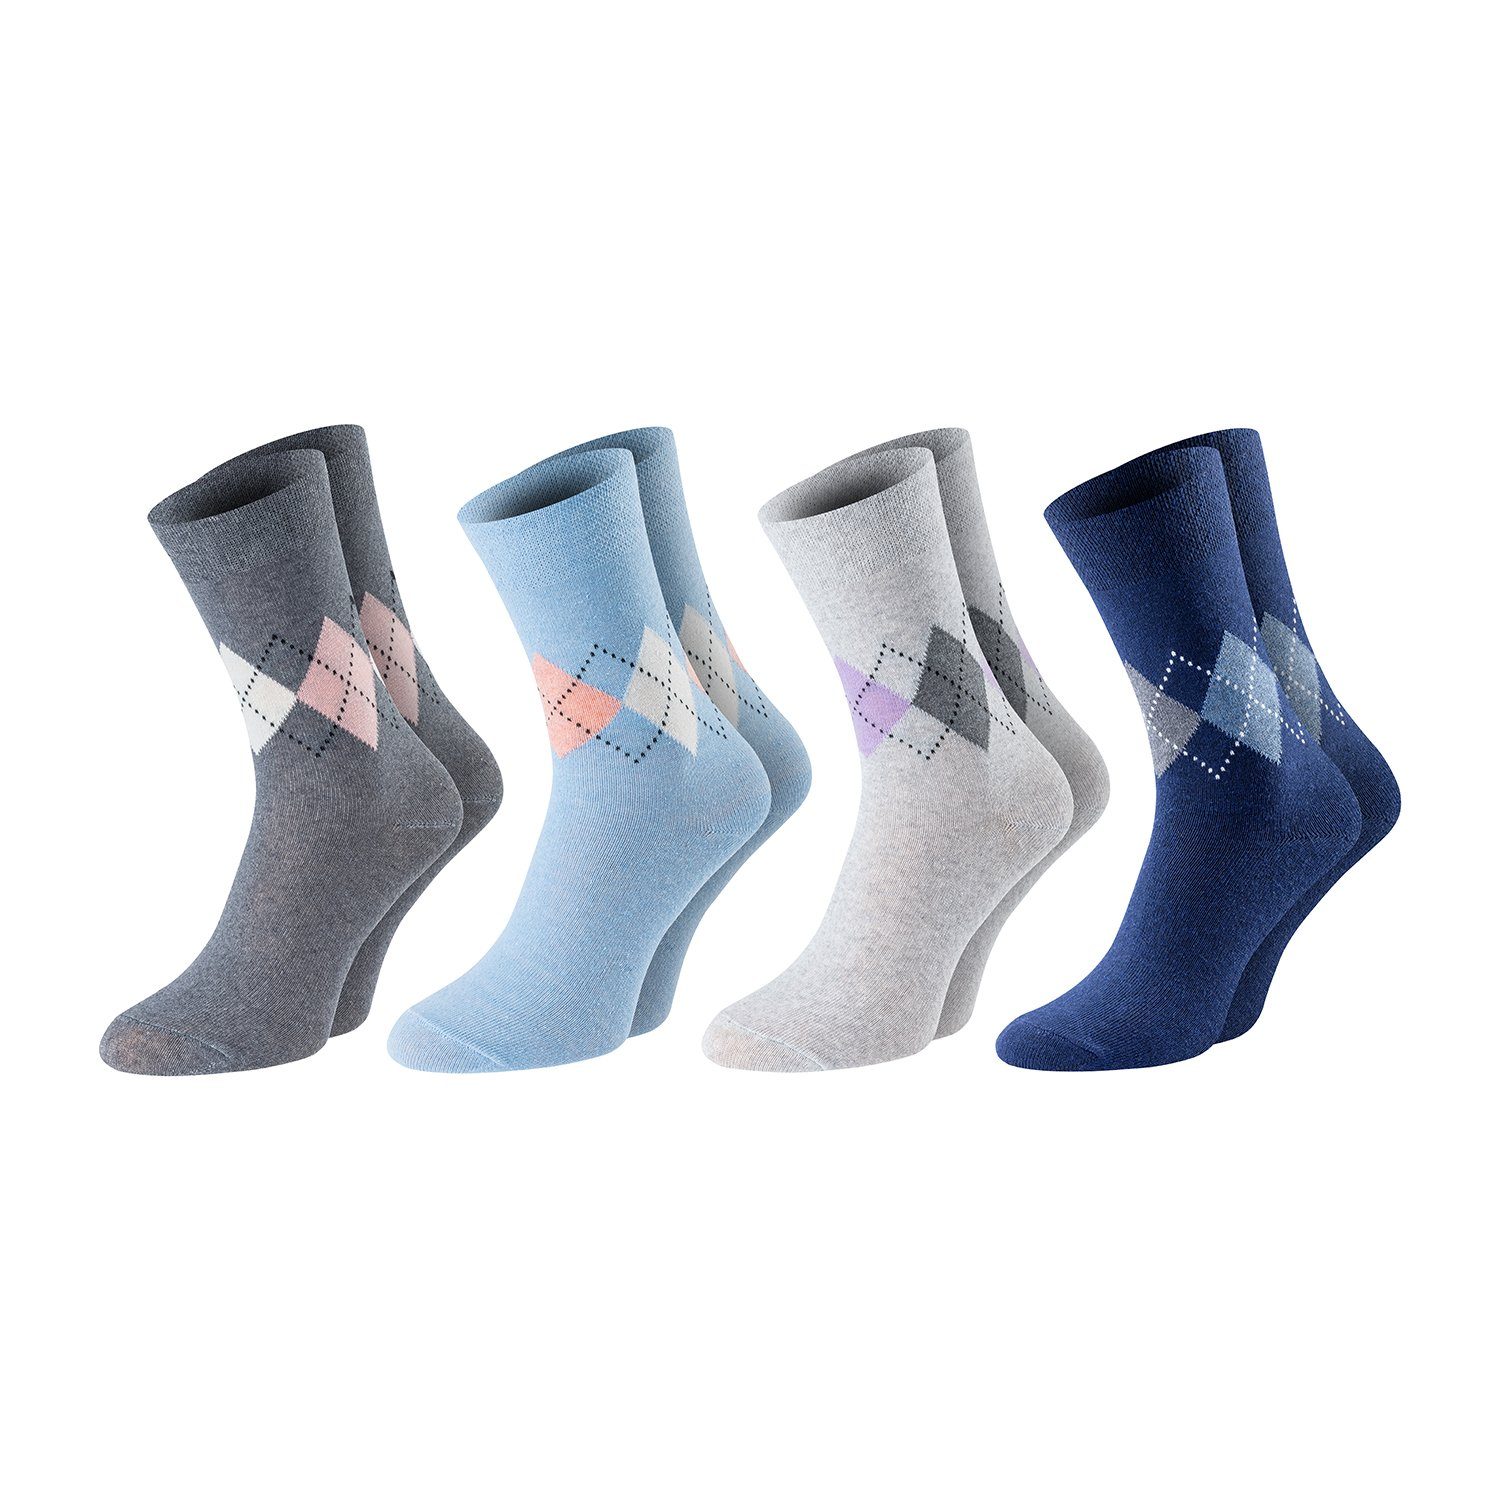 Chili Lifestyle Strümpfe Lady Diamond Socken, 4 Paar, für Damen, Business,  Freizeit, Baumwolle